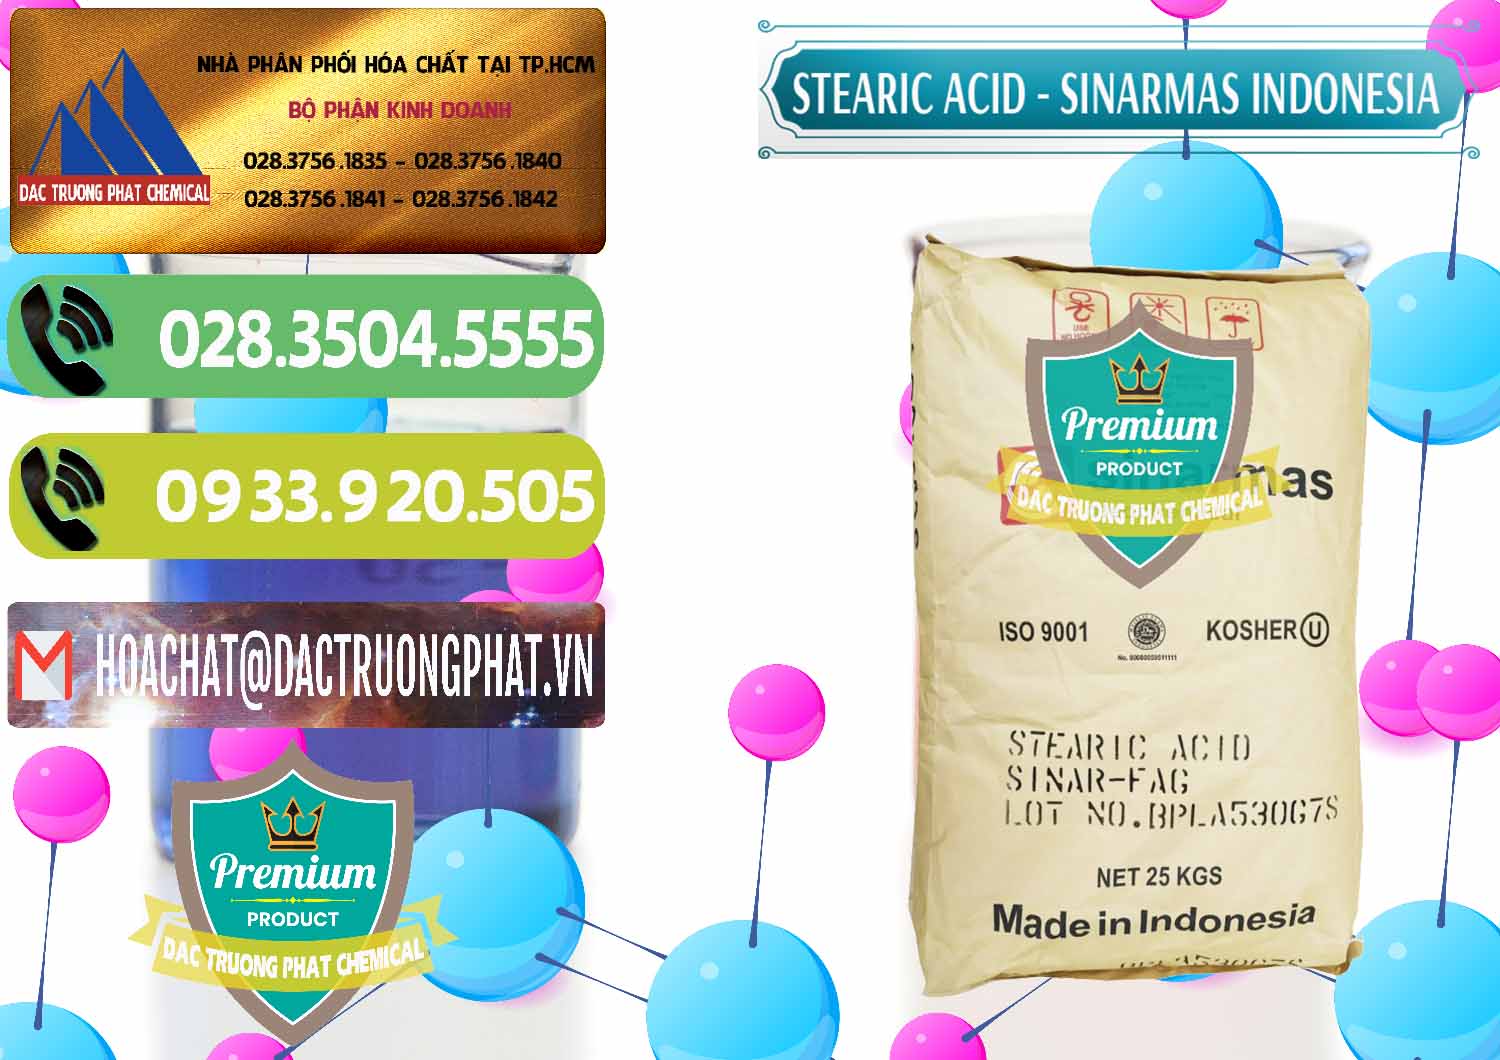 Cty chuyên bán _ cung ứng Axit Stearic - Stearic Acid Sinarmas Indonesia - 0389 - Đơn vị chuyên phân phối và cung ứng hóa chất tại TP.HCM - hoachatmientay.vn